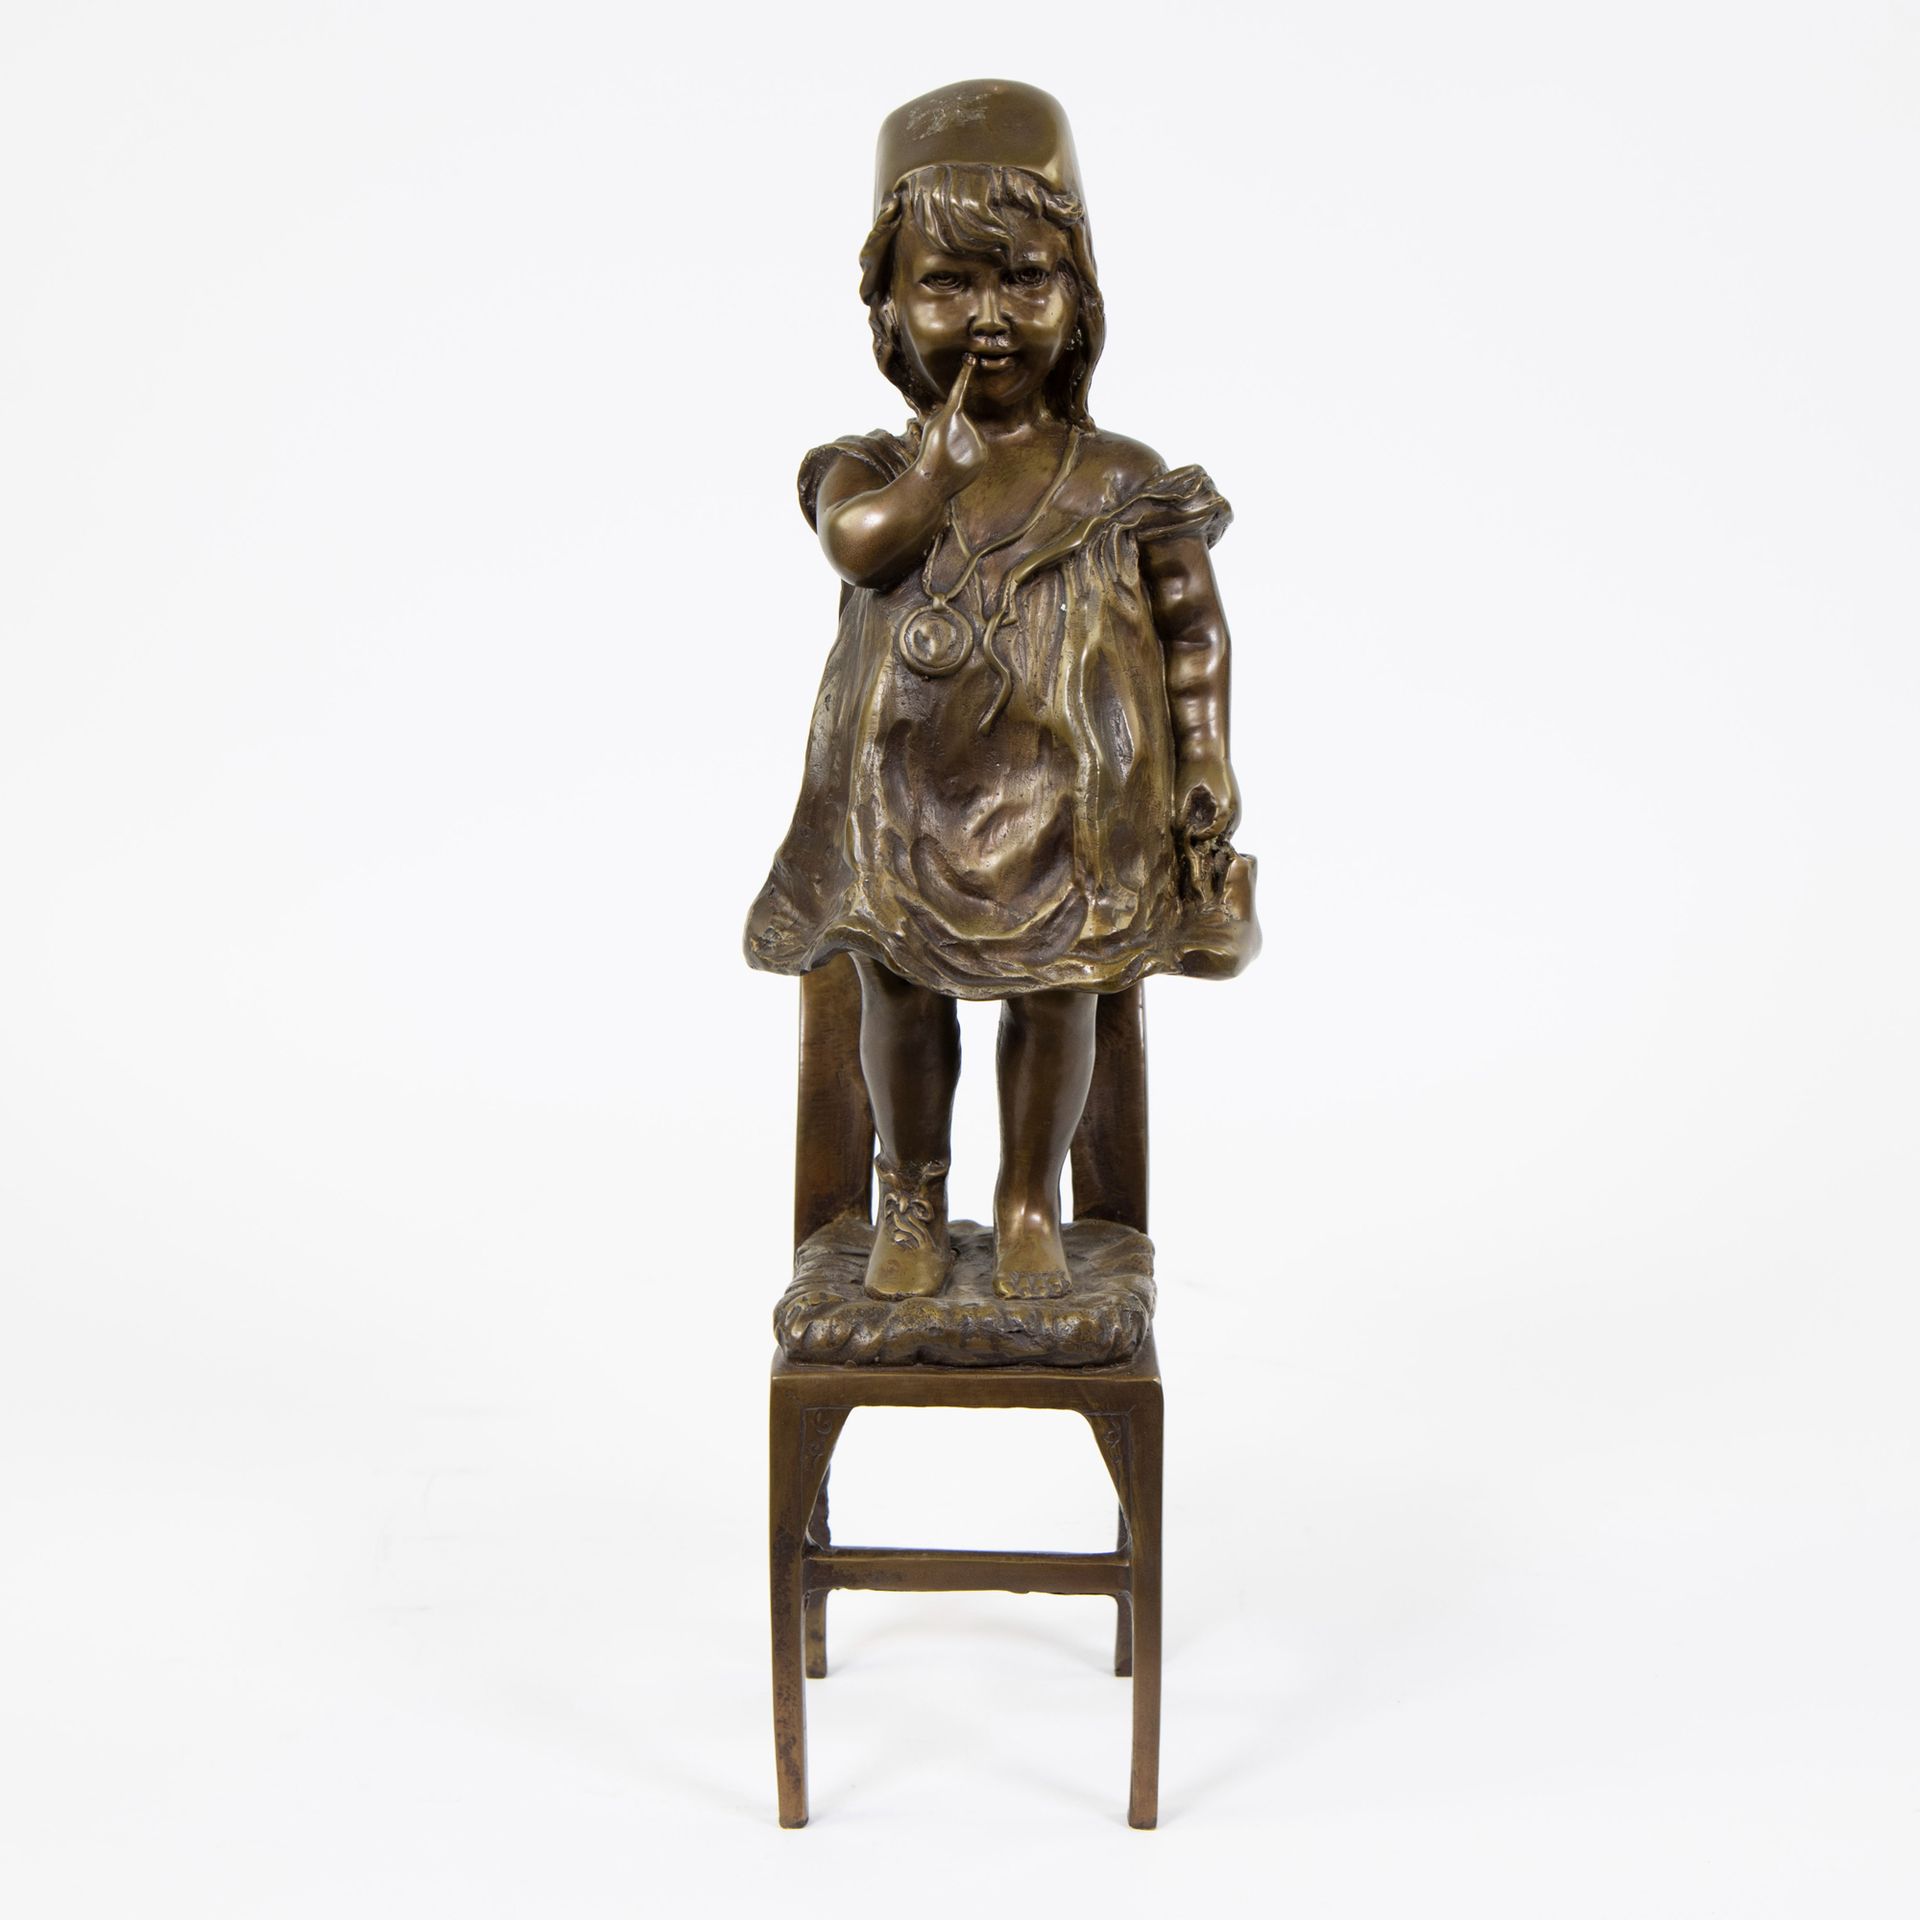 Null 椅子上的淘气女孩的棕色铜器，仿照胡安-克拉拉的作品，签名为Mene
Bruingepatineerd brons van een ondeugend &hellip;